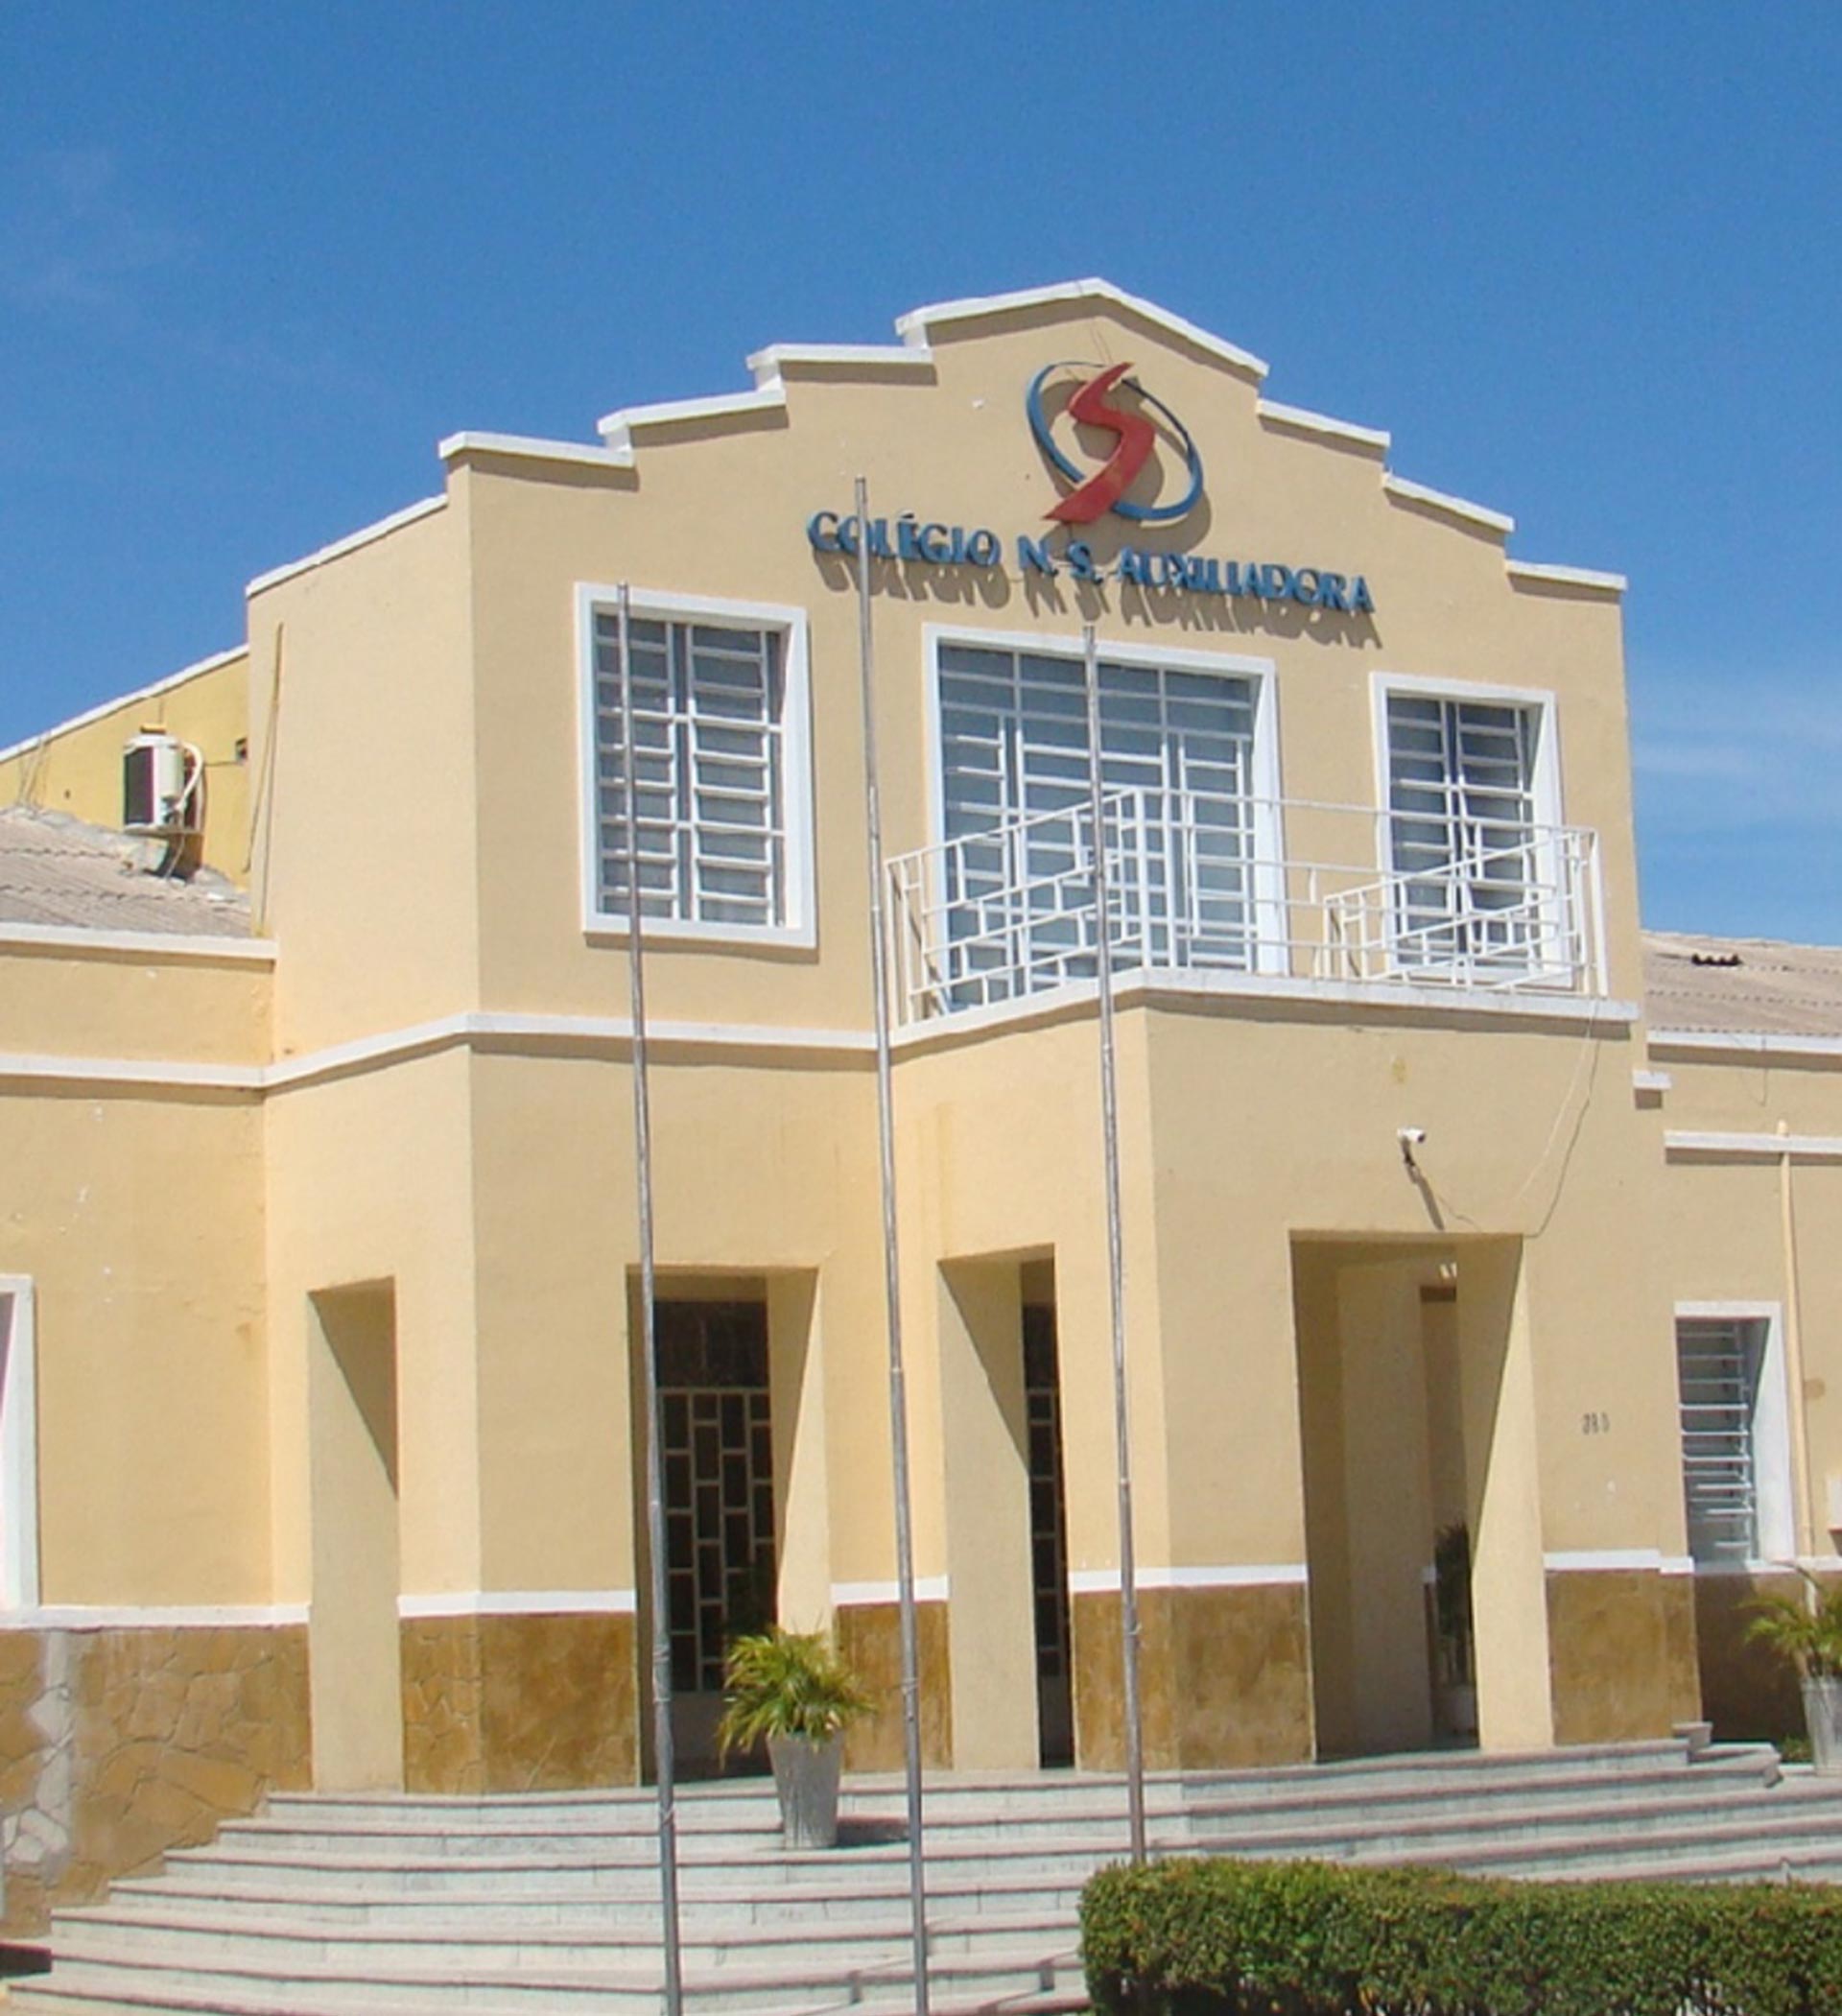 El colegio privado Nuestra Señora Auxiliadora de Petrolina, Pernambuco, Brasil